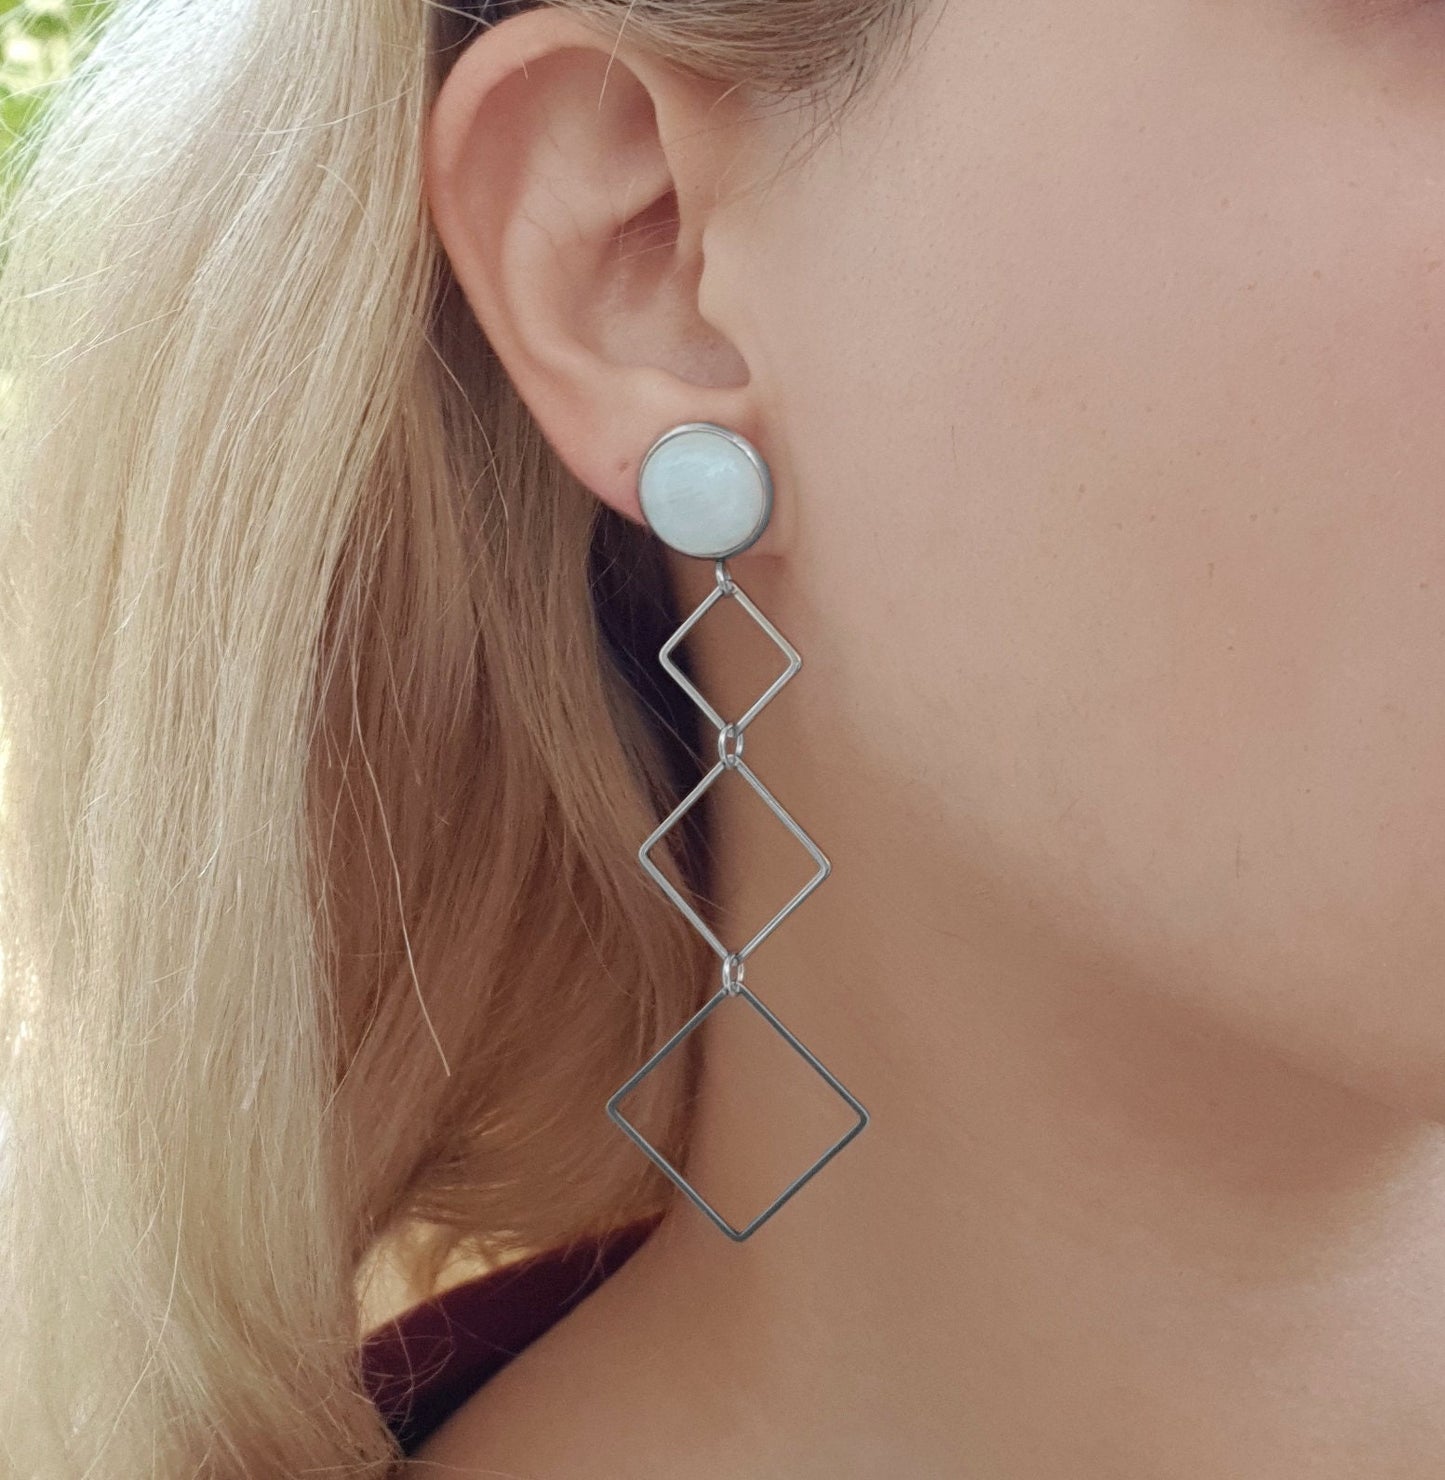 Very Long Dangle Earrings Labradorite Earrings Moonstone Earrings Hypoallergenic Stainless Steel Earrings Personalised Earrings